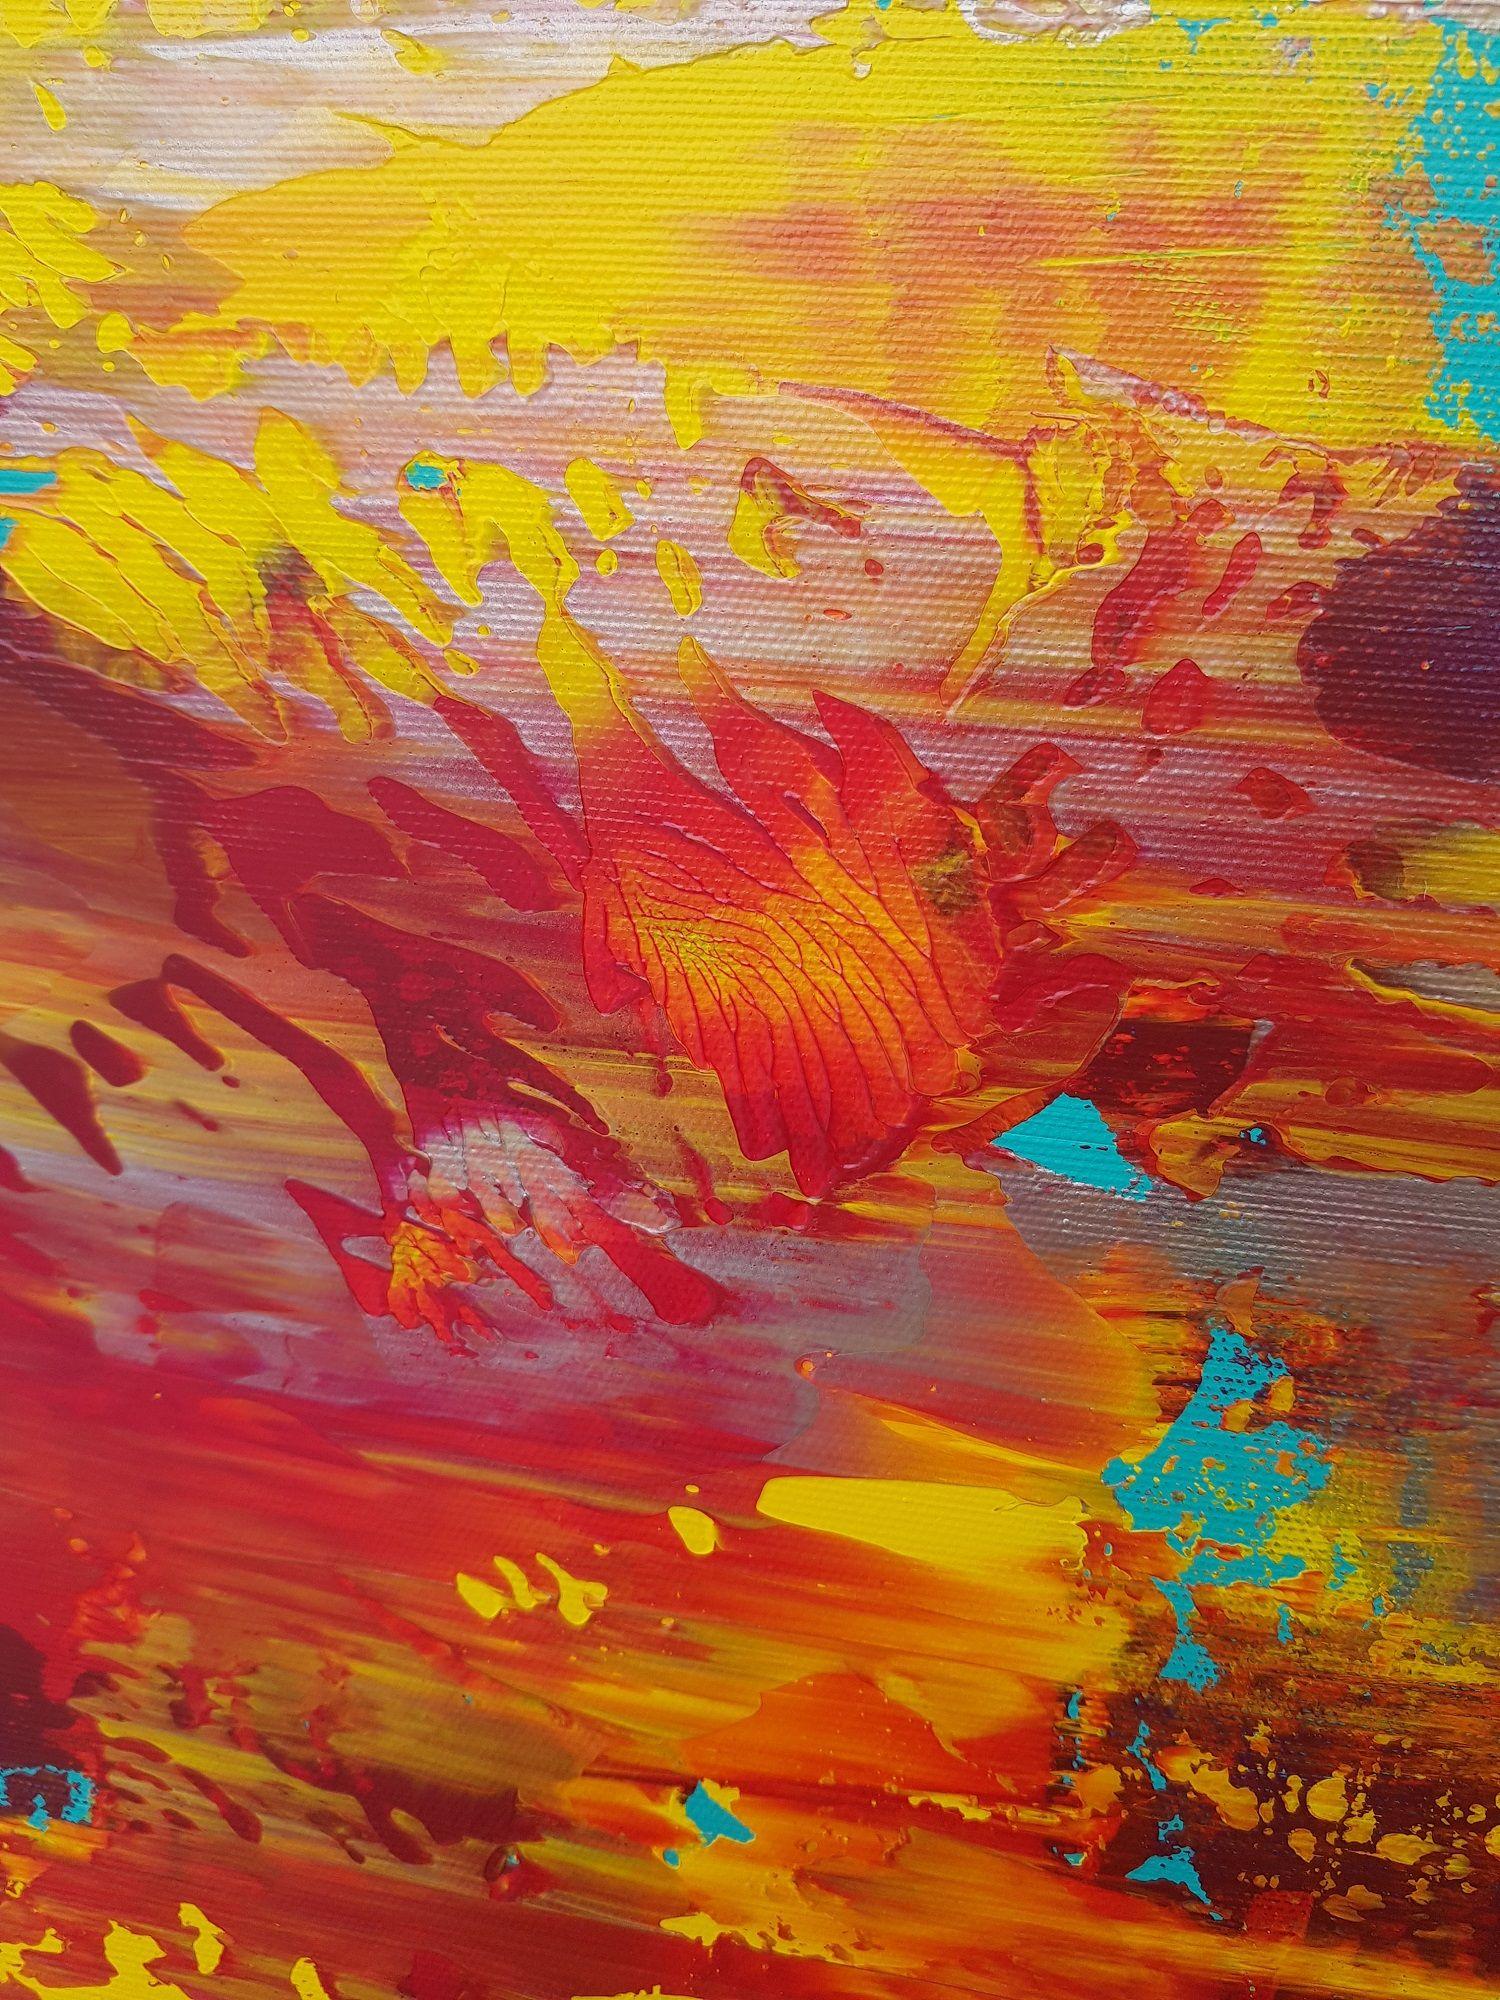 Une peinture abstraite originale en diptyque colorée inspirée par les vibrations des Caraïbes.    Texture profonde et multiples couches d'acryliques riches en pigments.  Des couleurs vives et éclatantes en contraste avec Tintin d'argent. La peinture